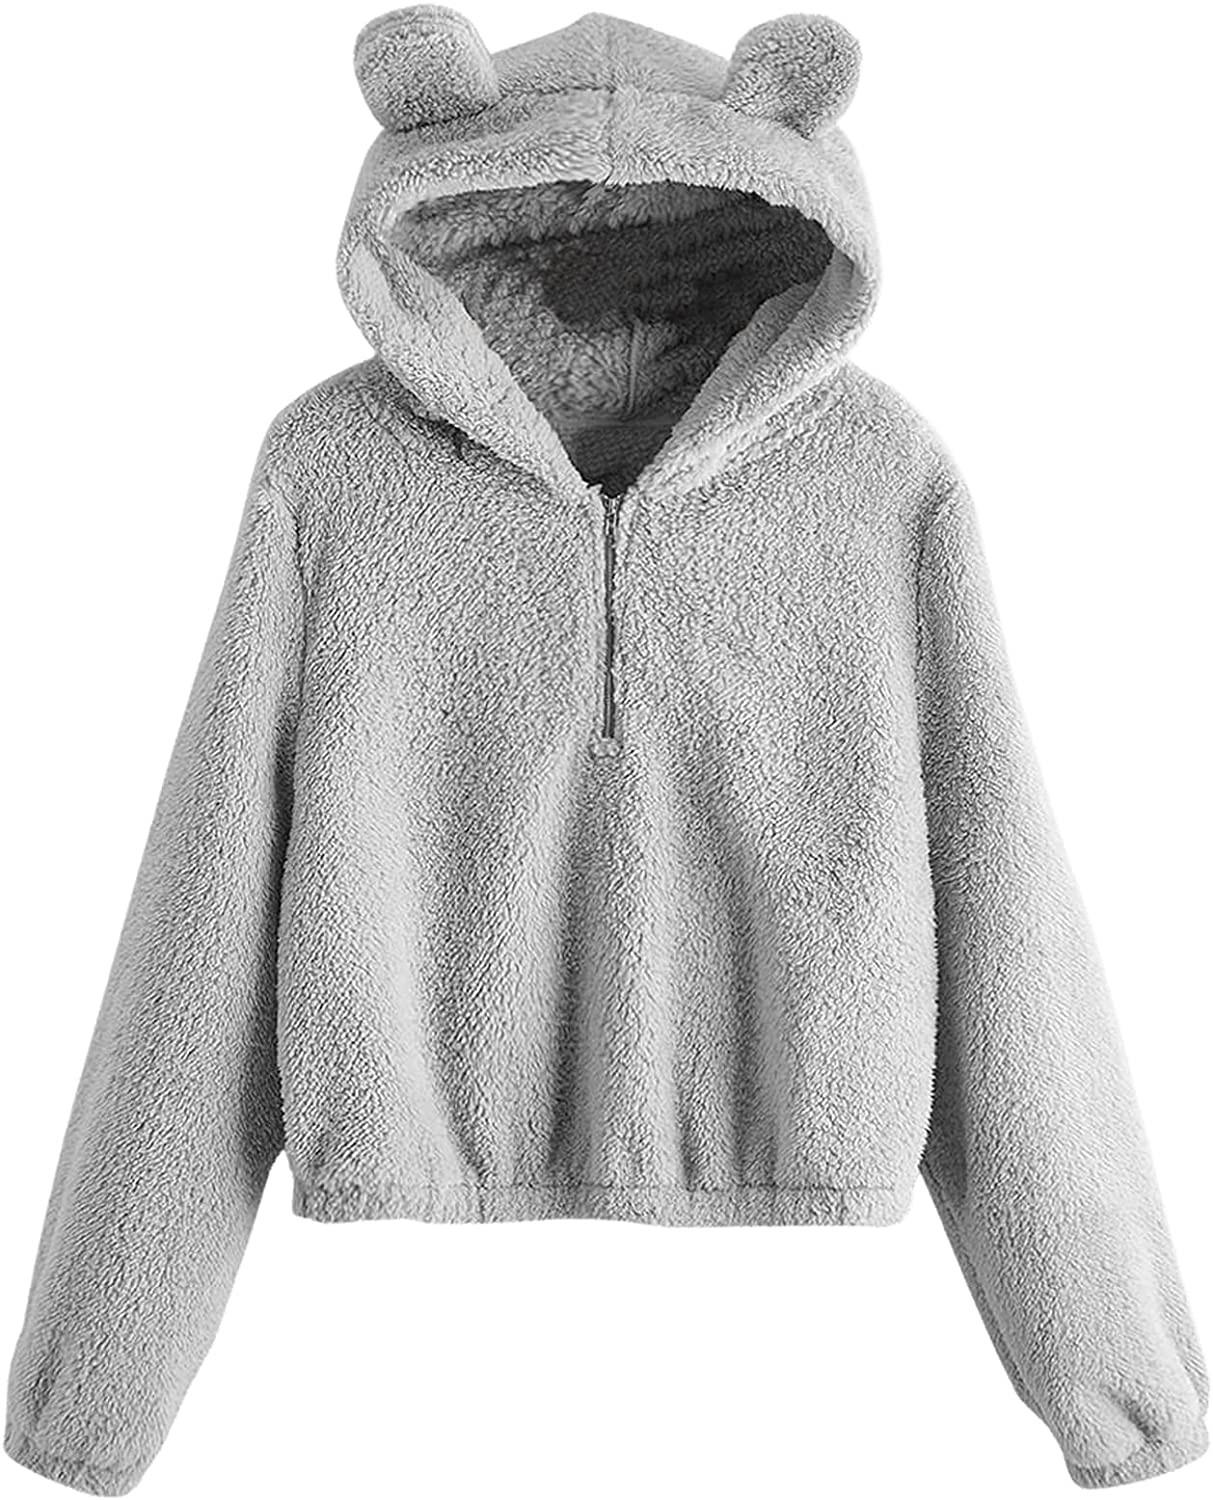 SweatyRocks Women's Cute Long Sleeve Hoodie Fuzzy Fleece Crop Pullover Sweatshirt Tops